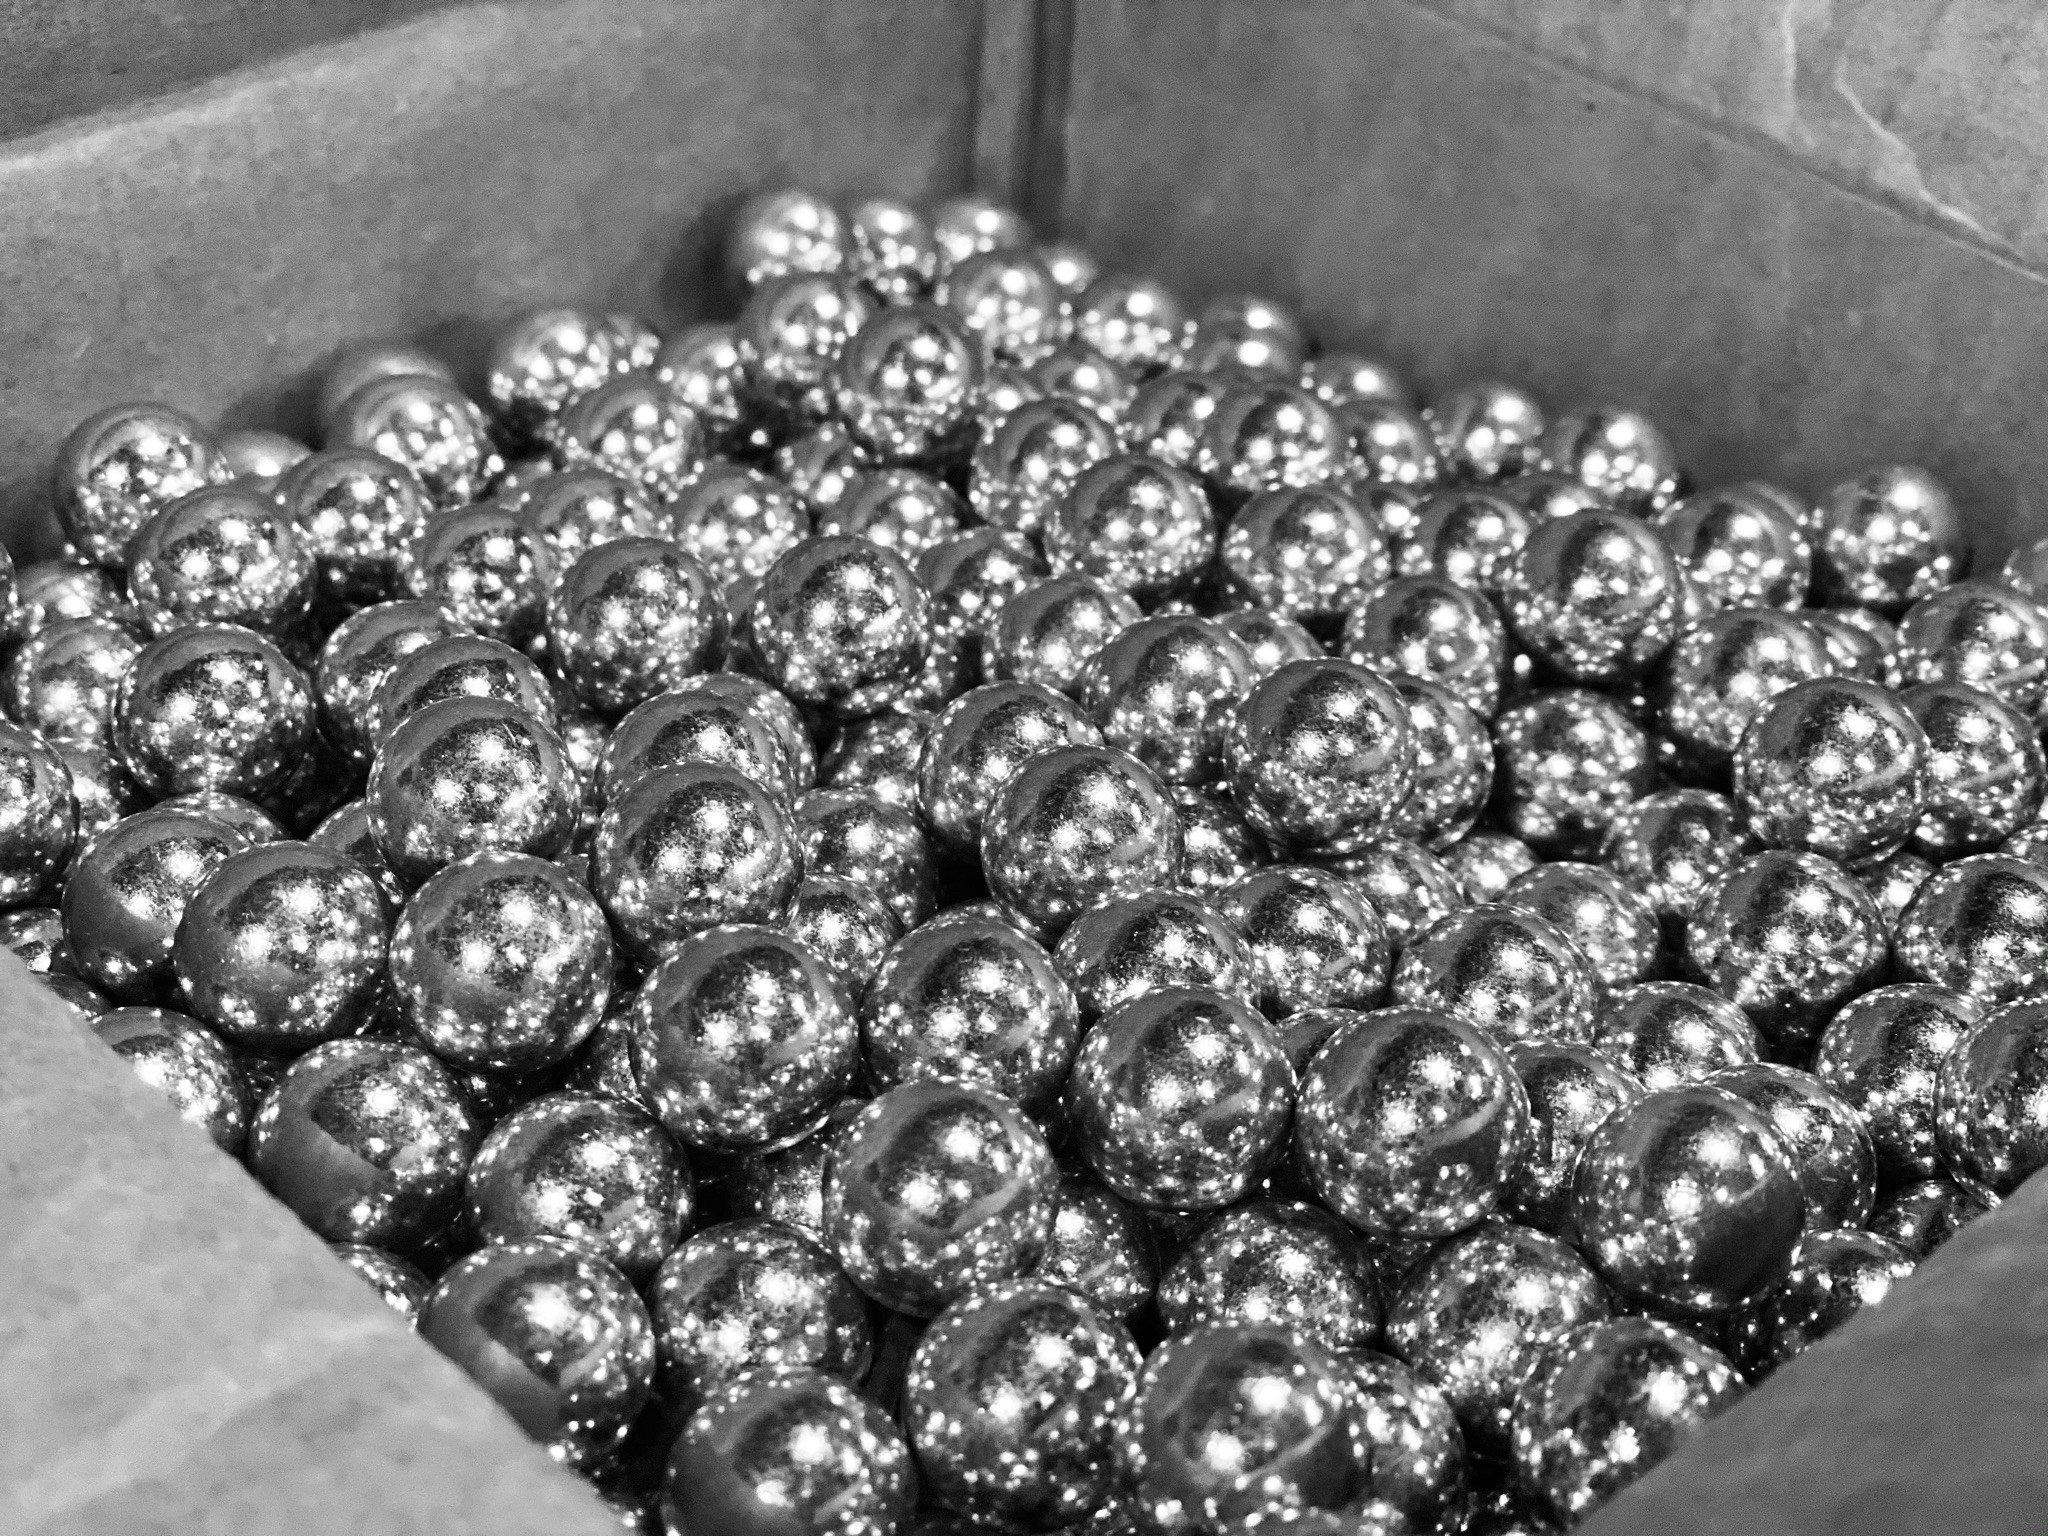 3/4 zinc coated metal balls